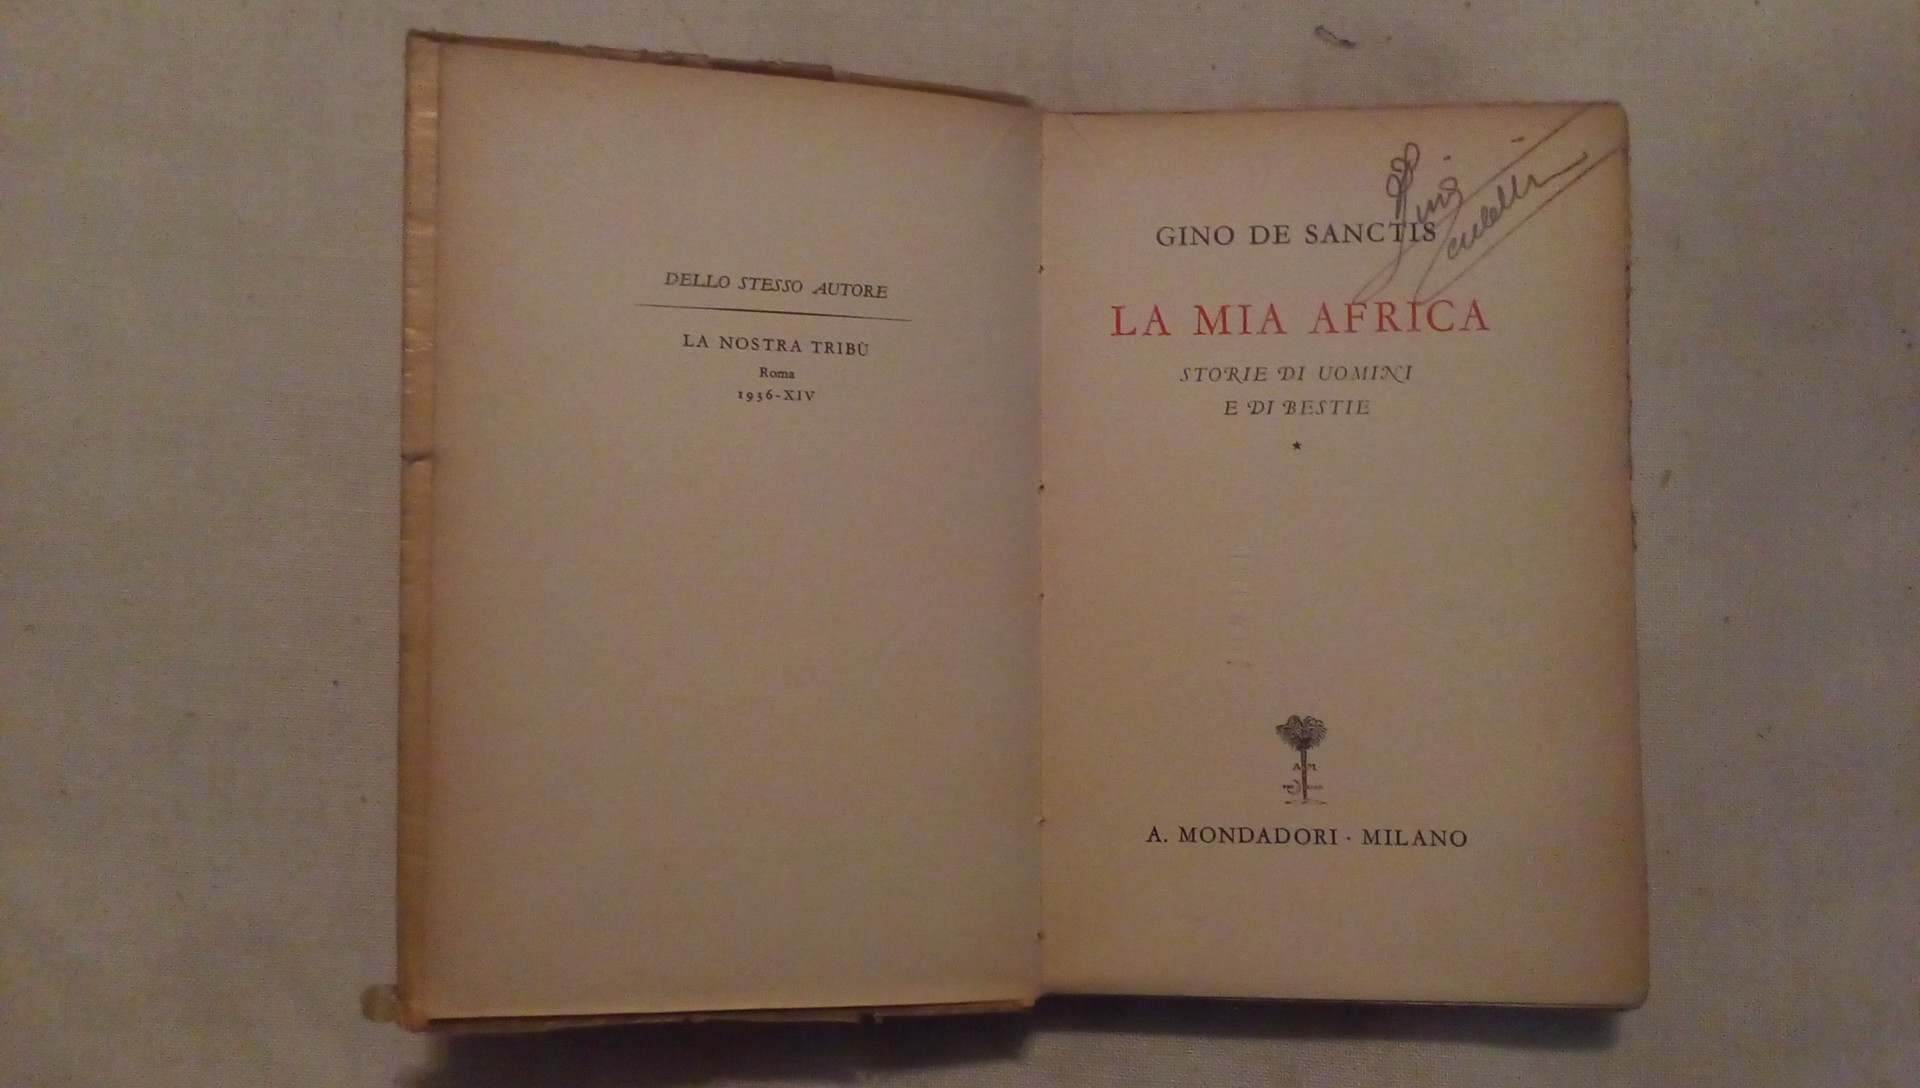 La mia Africa - Gino de Sanctis - Mondadori 1938